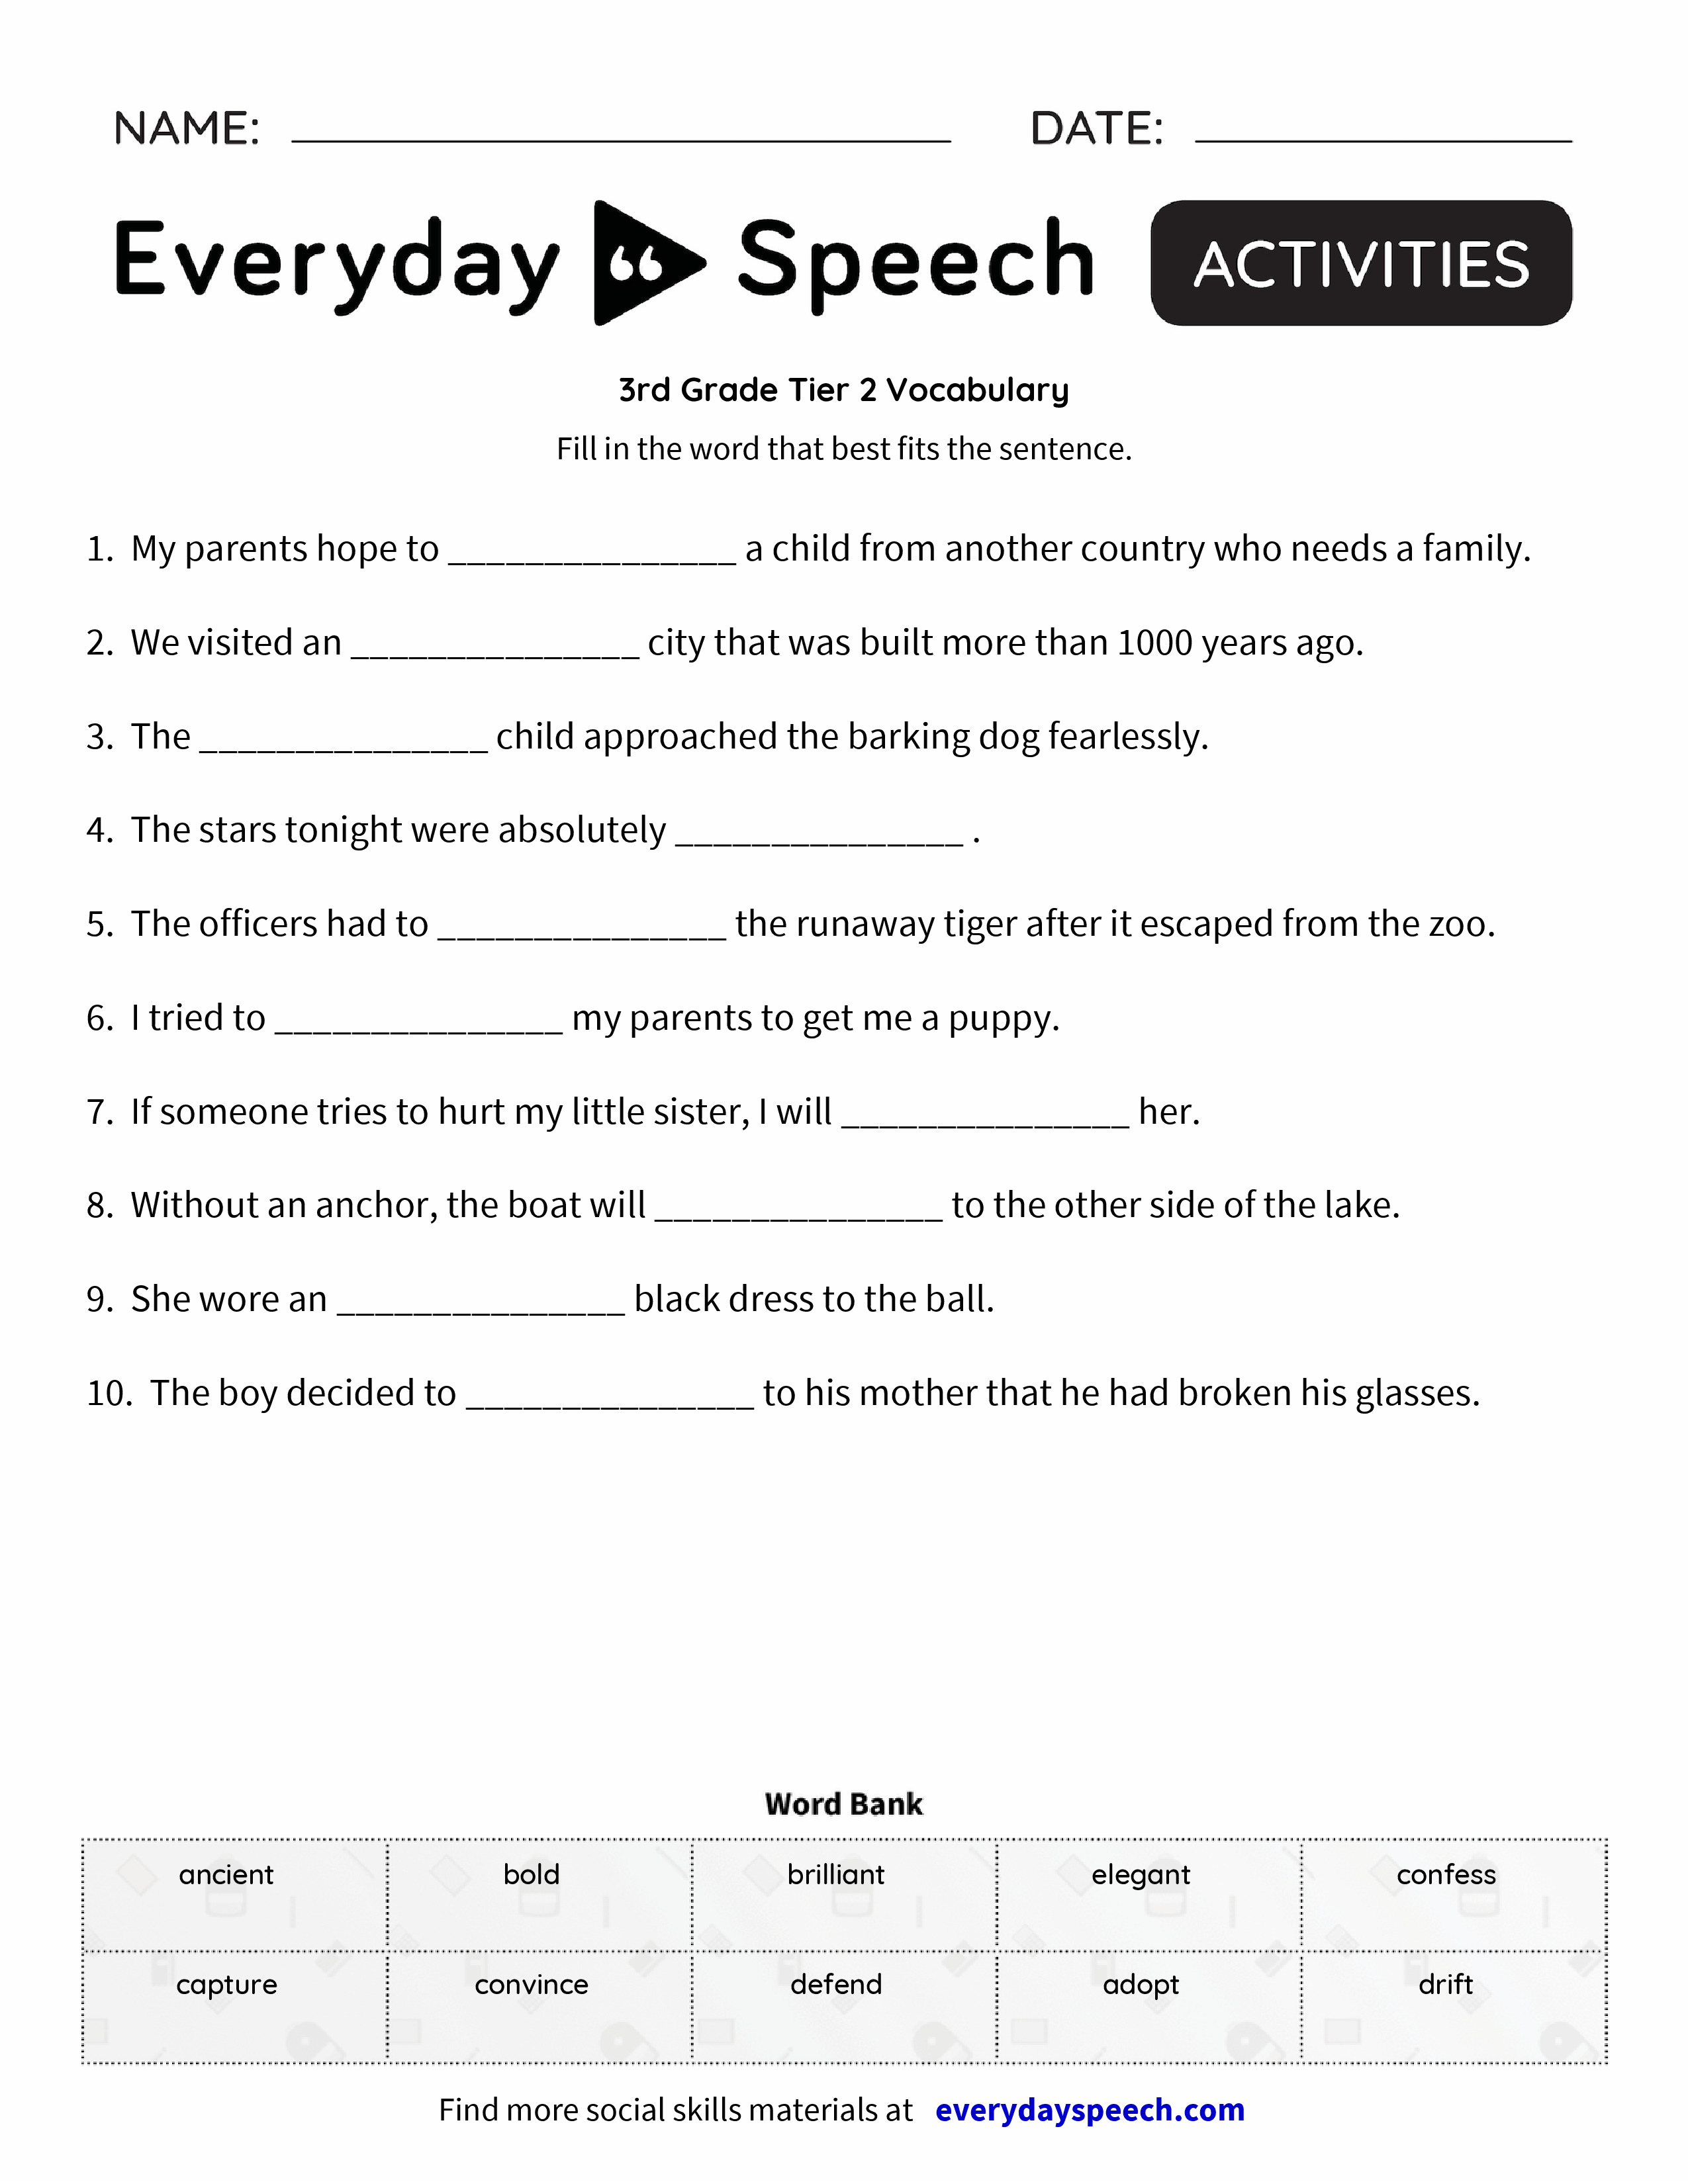 3rd-grade-tier-2-vocabulary-everyday-speech-everyday-speech